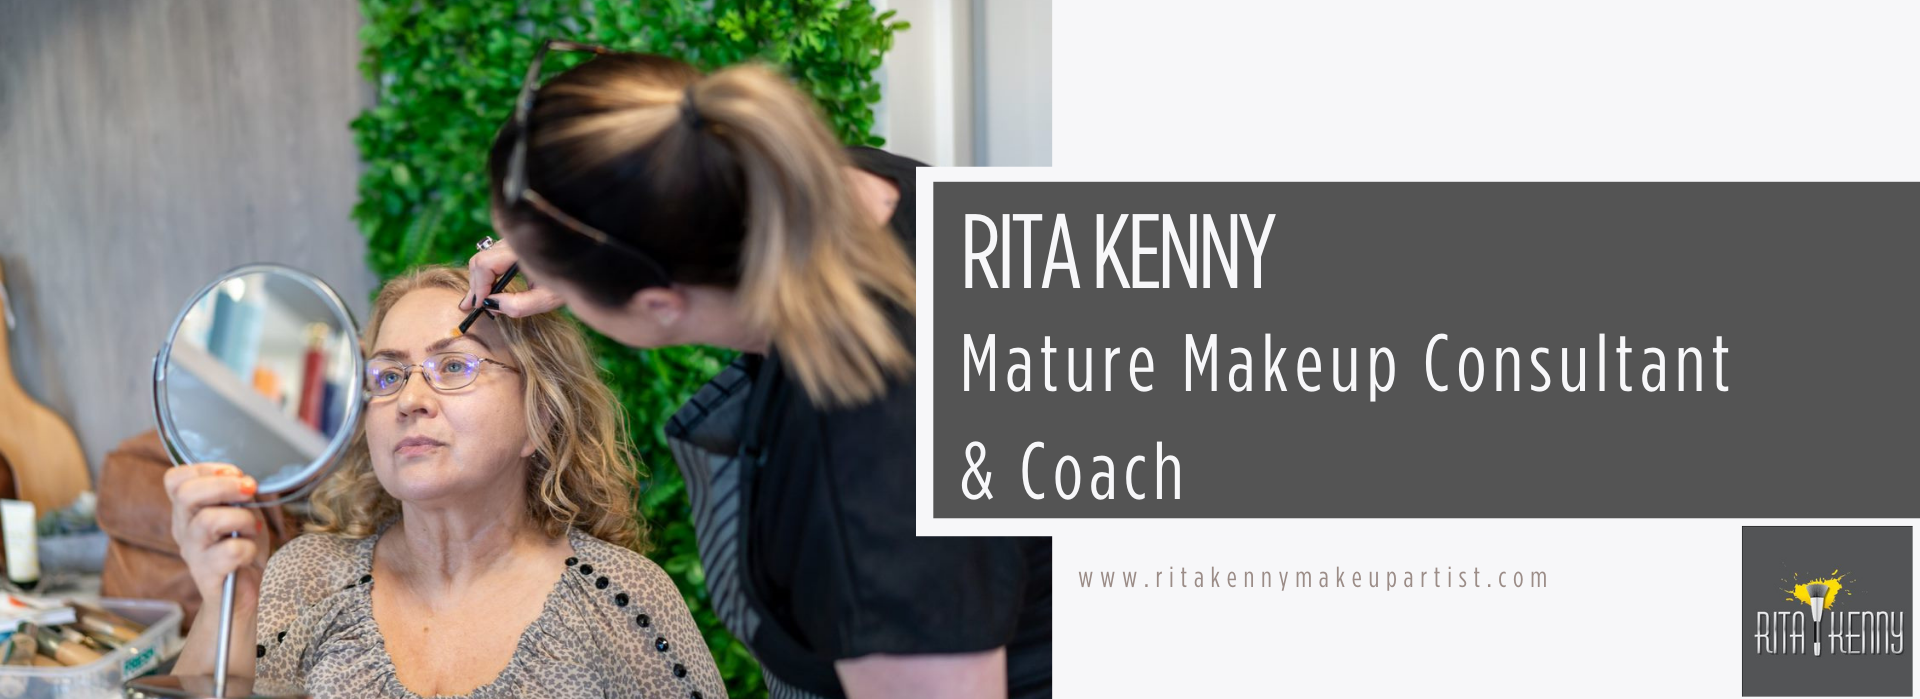 Rita Kenny Makeup Artist .com